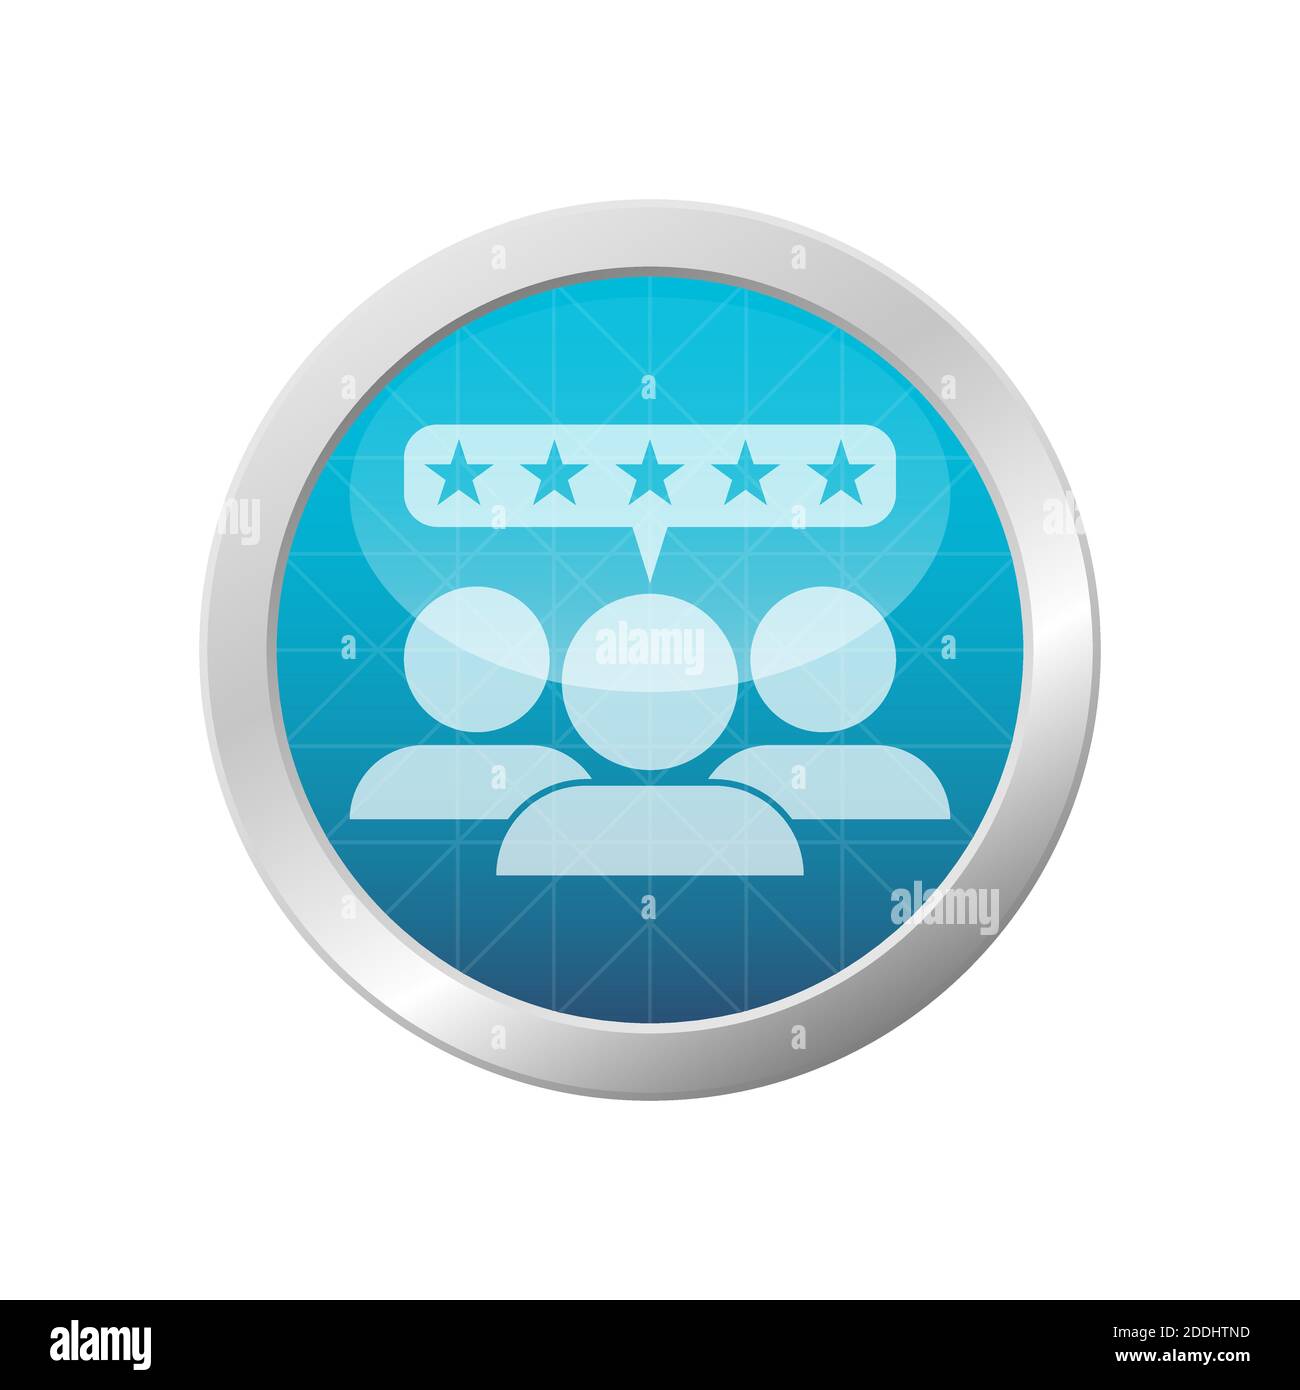 Icona delle recensioni a cinque stelle. Gruppo di tre clienti soddisfatti. Immagine vettoriale del cerchio azzurro. Illustrazione Vettoriale